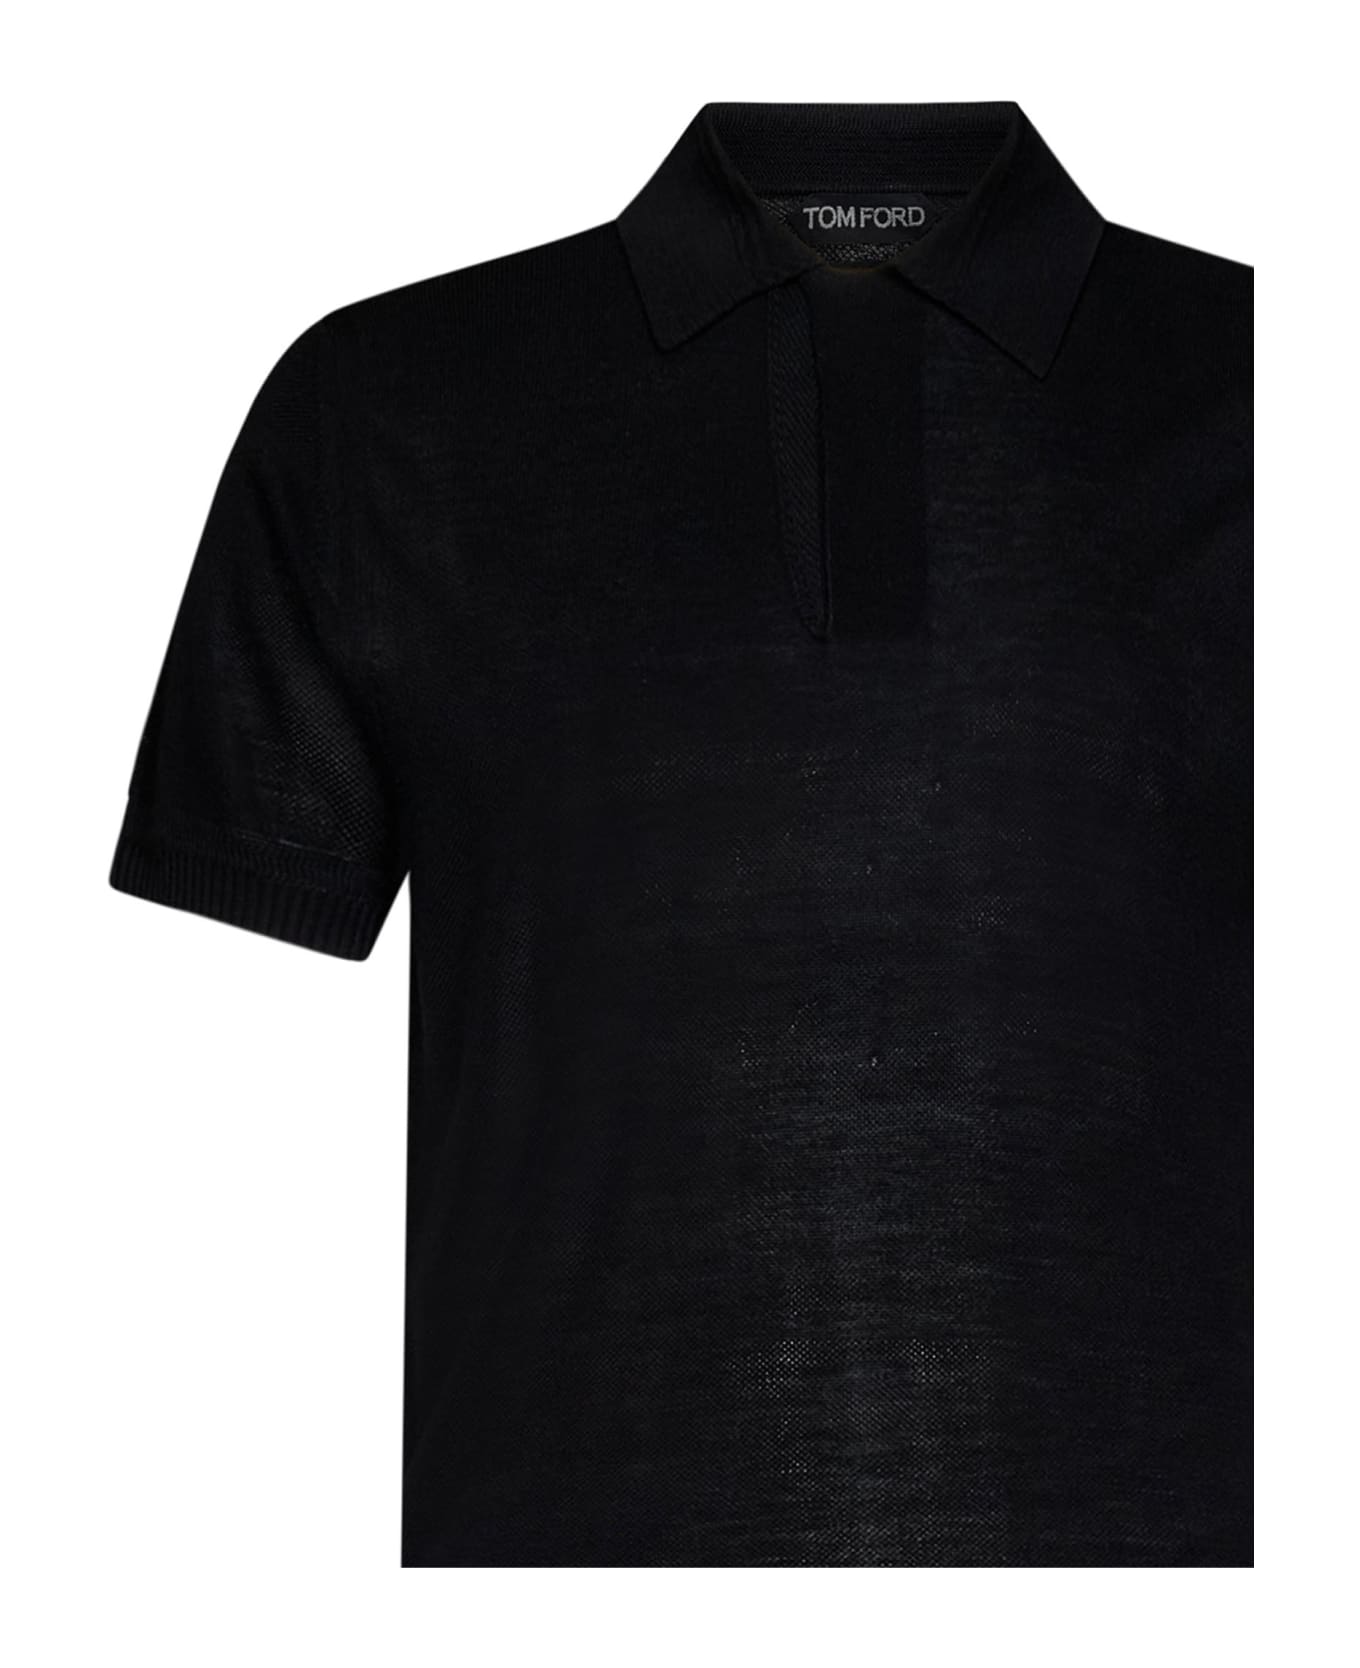 Tom Ford Polo Shirt - Black ポロシャツ